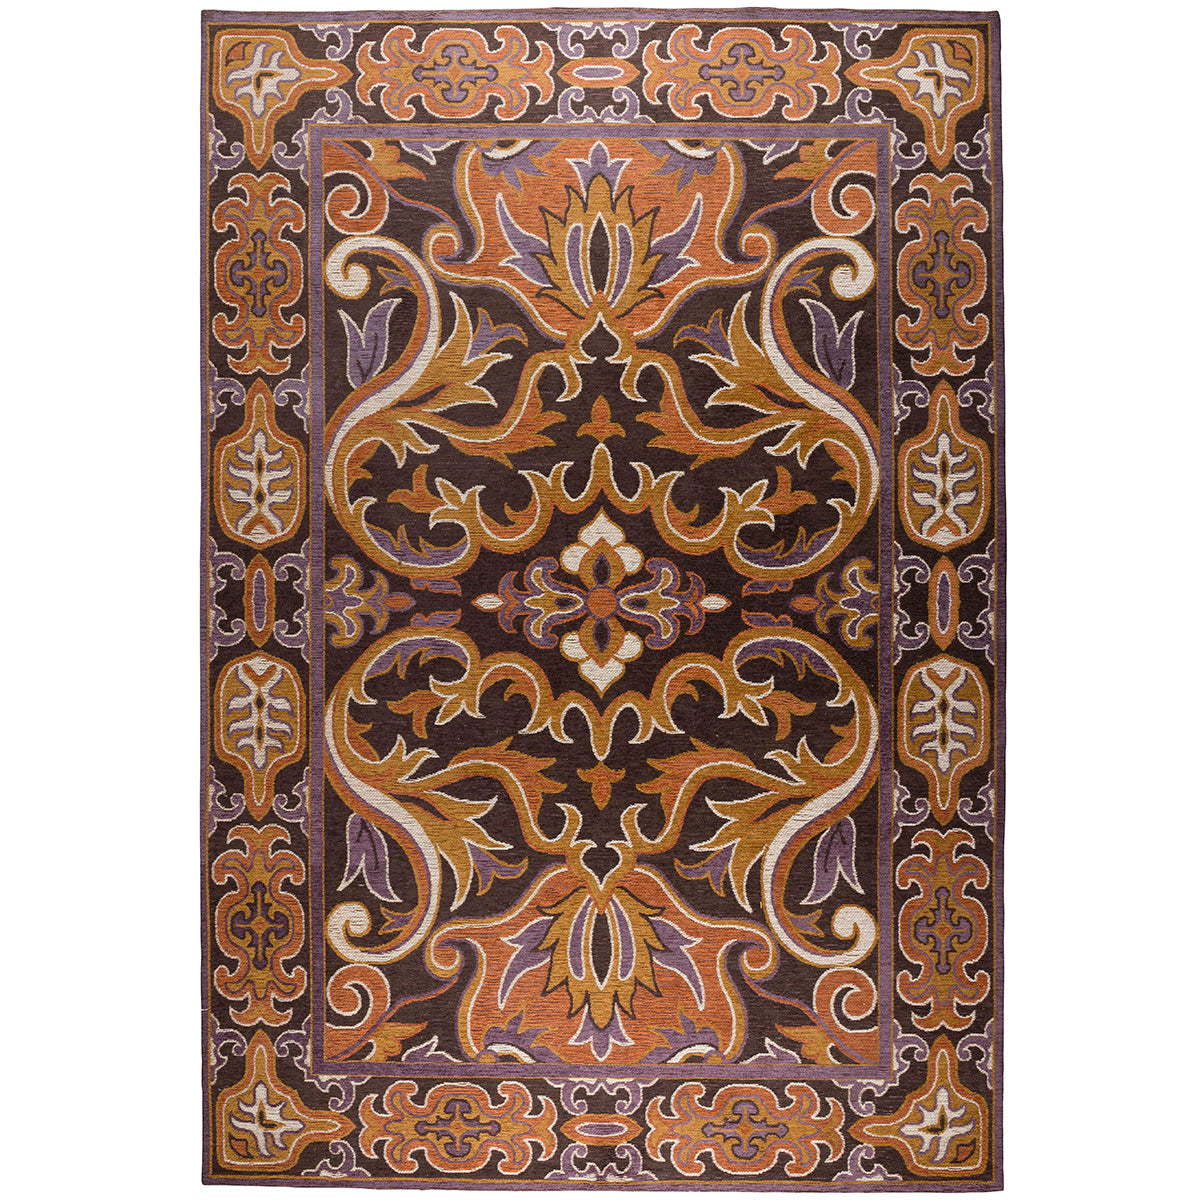 Bashmira Carpet